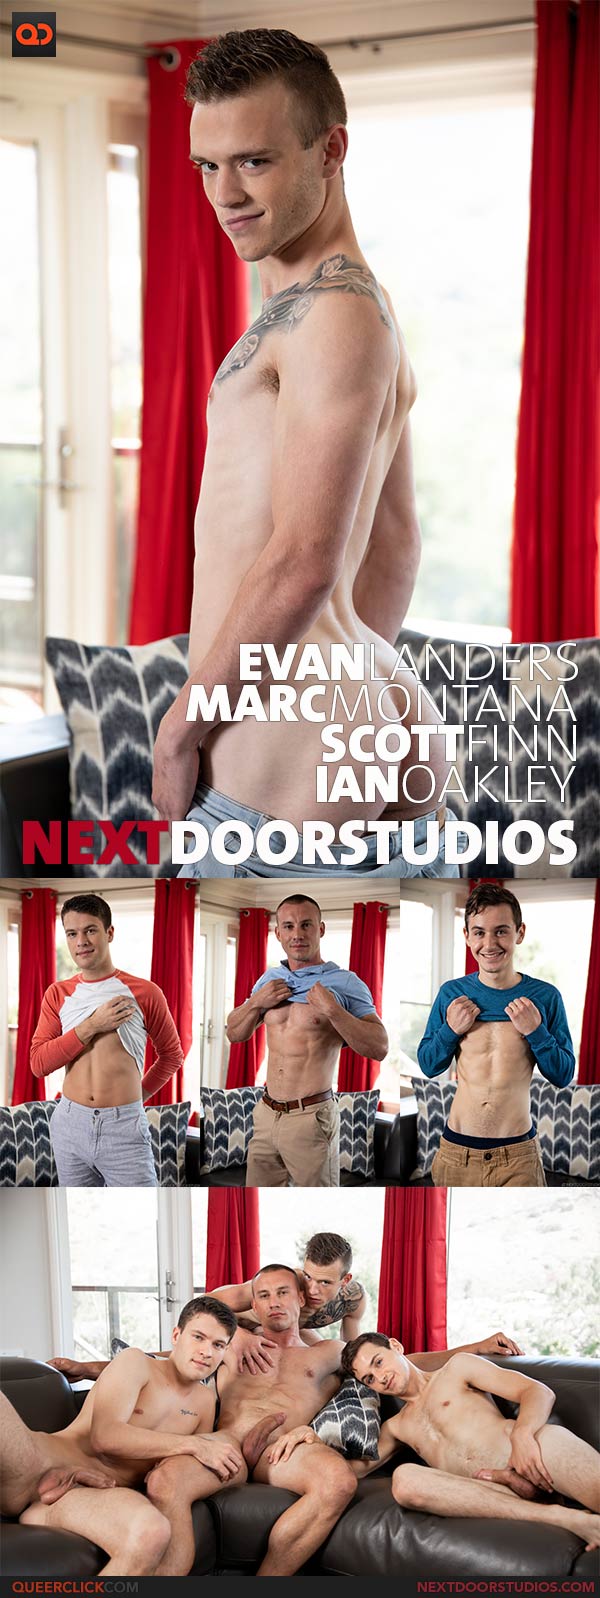 Next Door Studios: Marc Montana, Scott Finn, Ian Oakley, and Evan Landers